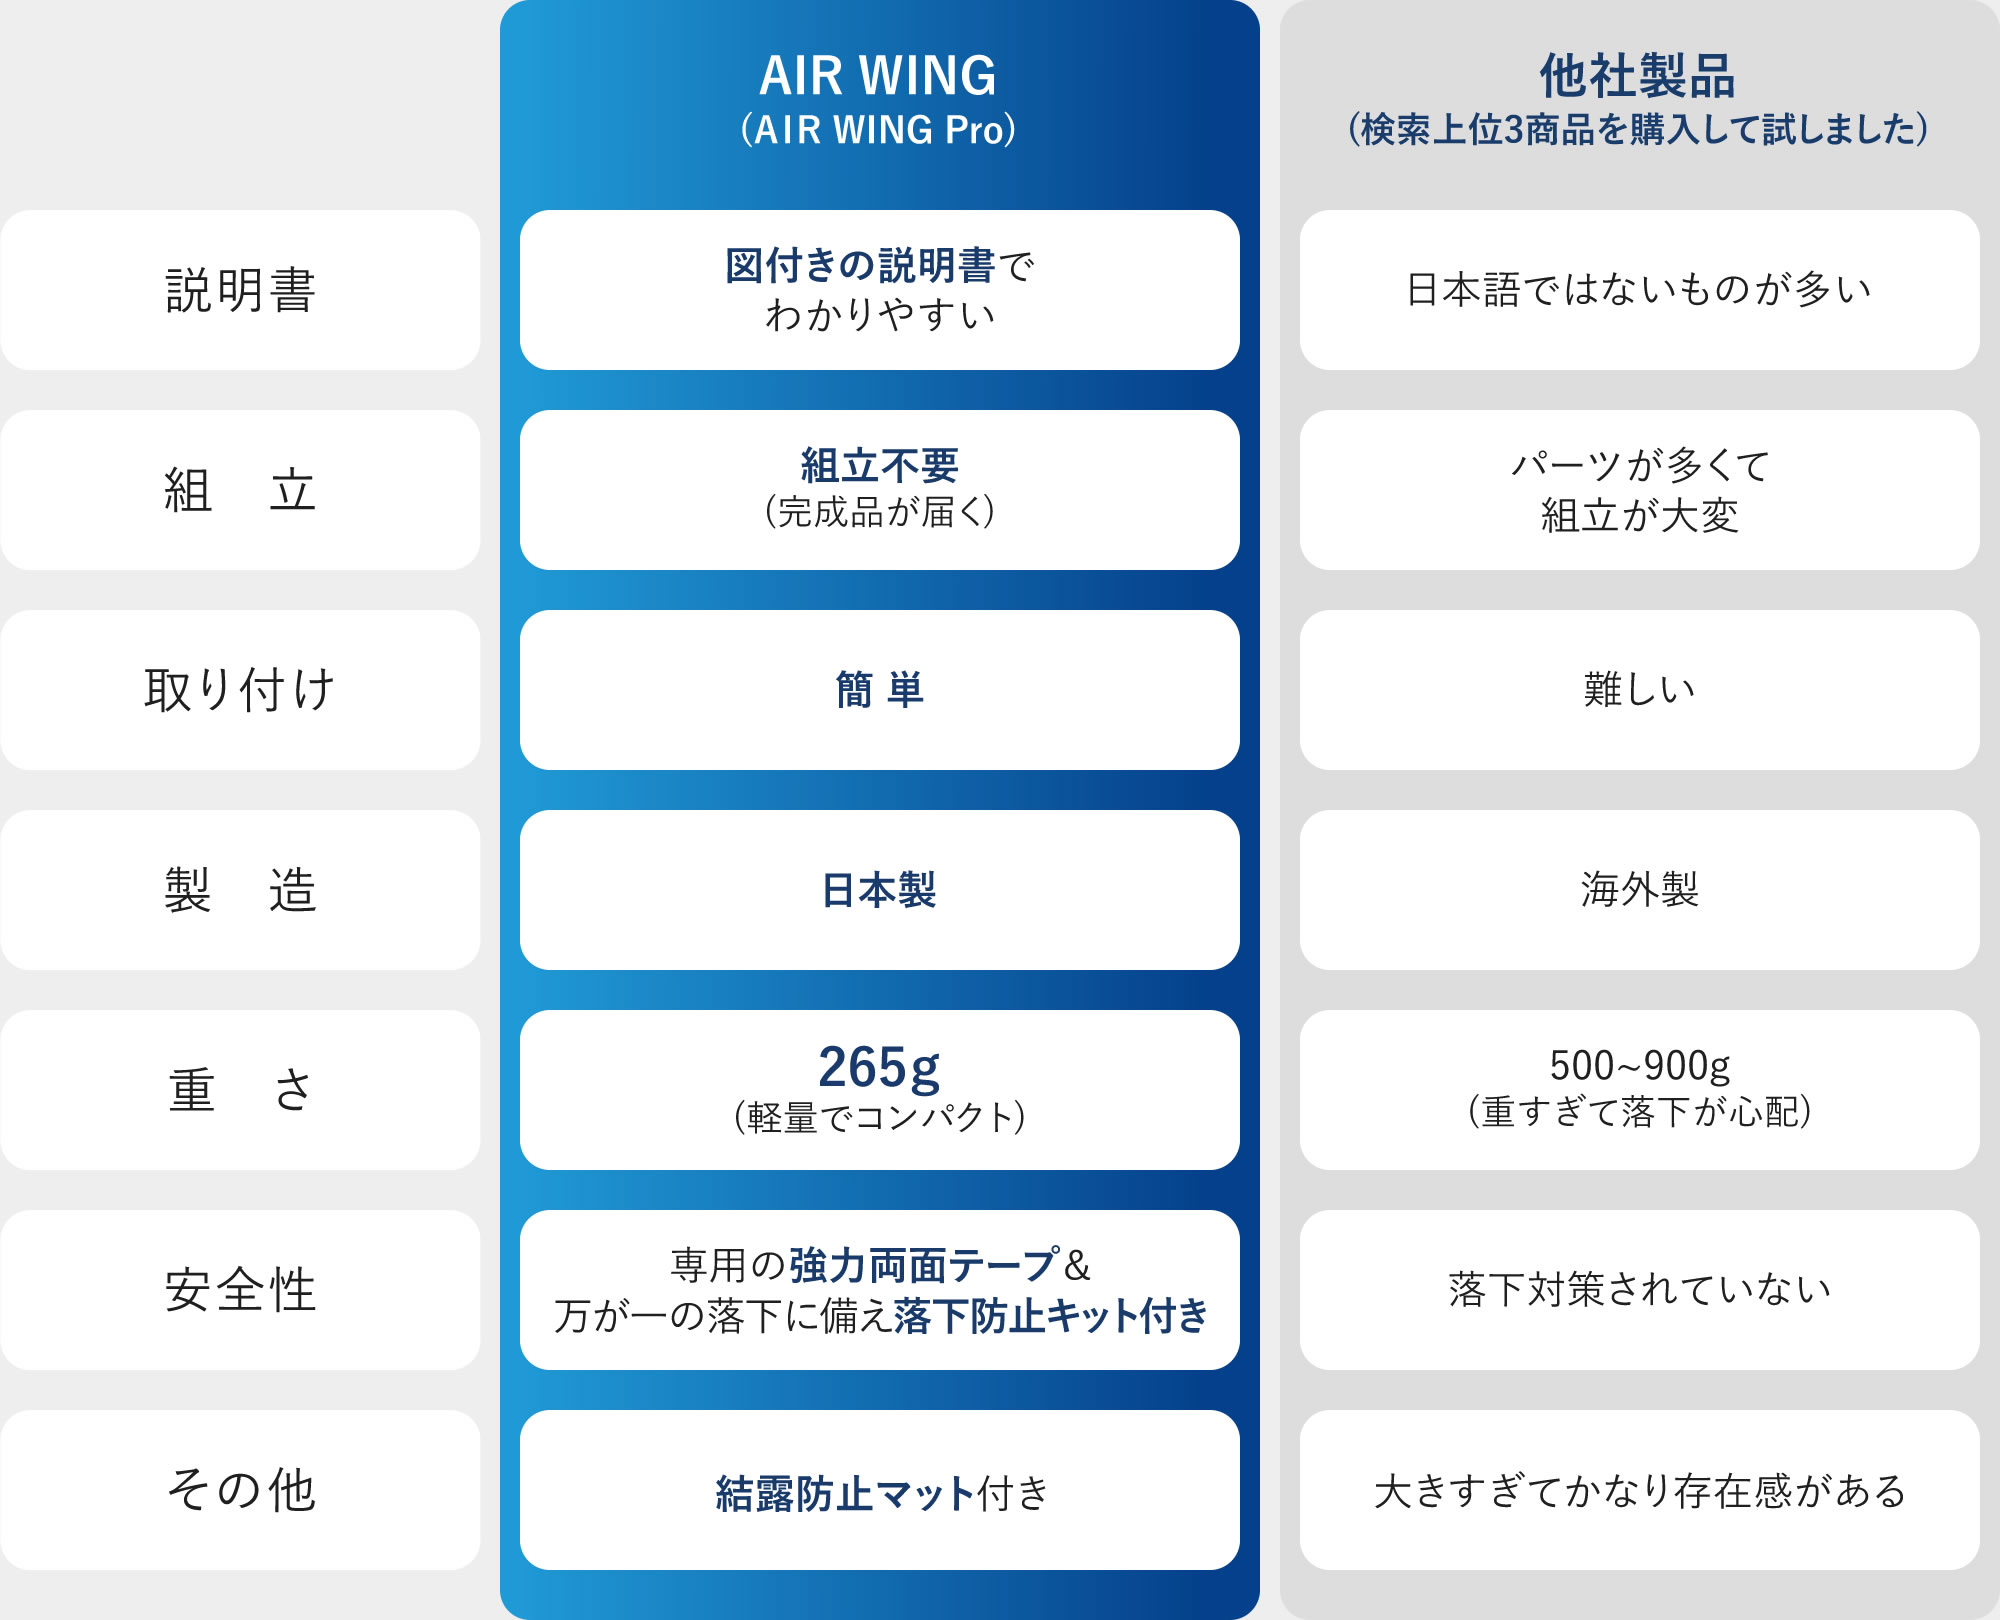 分類 AIR WING(AIR WING Pro) 他社製品(検索上位3商品を購入して試しました)　説明書 図付きの説明書でわかりやすい 日本語ではないものが多い　組立 組立不要(完成品が届く) パーツが多くて組立が大変　取り付け 簡単 難しい　製造 日本製 海外製　重さ 265ｇ(軽量でコンパクト) 500～900g(重すぎて落下が心配)　安全性 専用の強力両面テープ＆万が一の落下に備え落下防止キット付き 落下対策されていない　その他 結露防止マット付き 大きすぎてかなり存在感がある